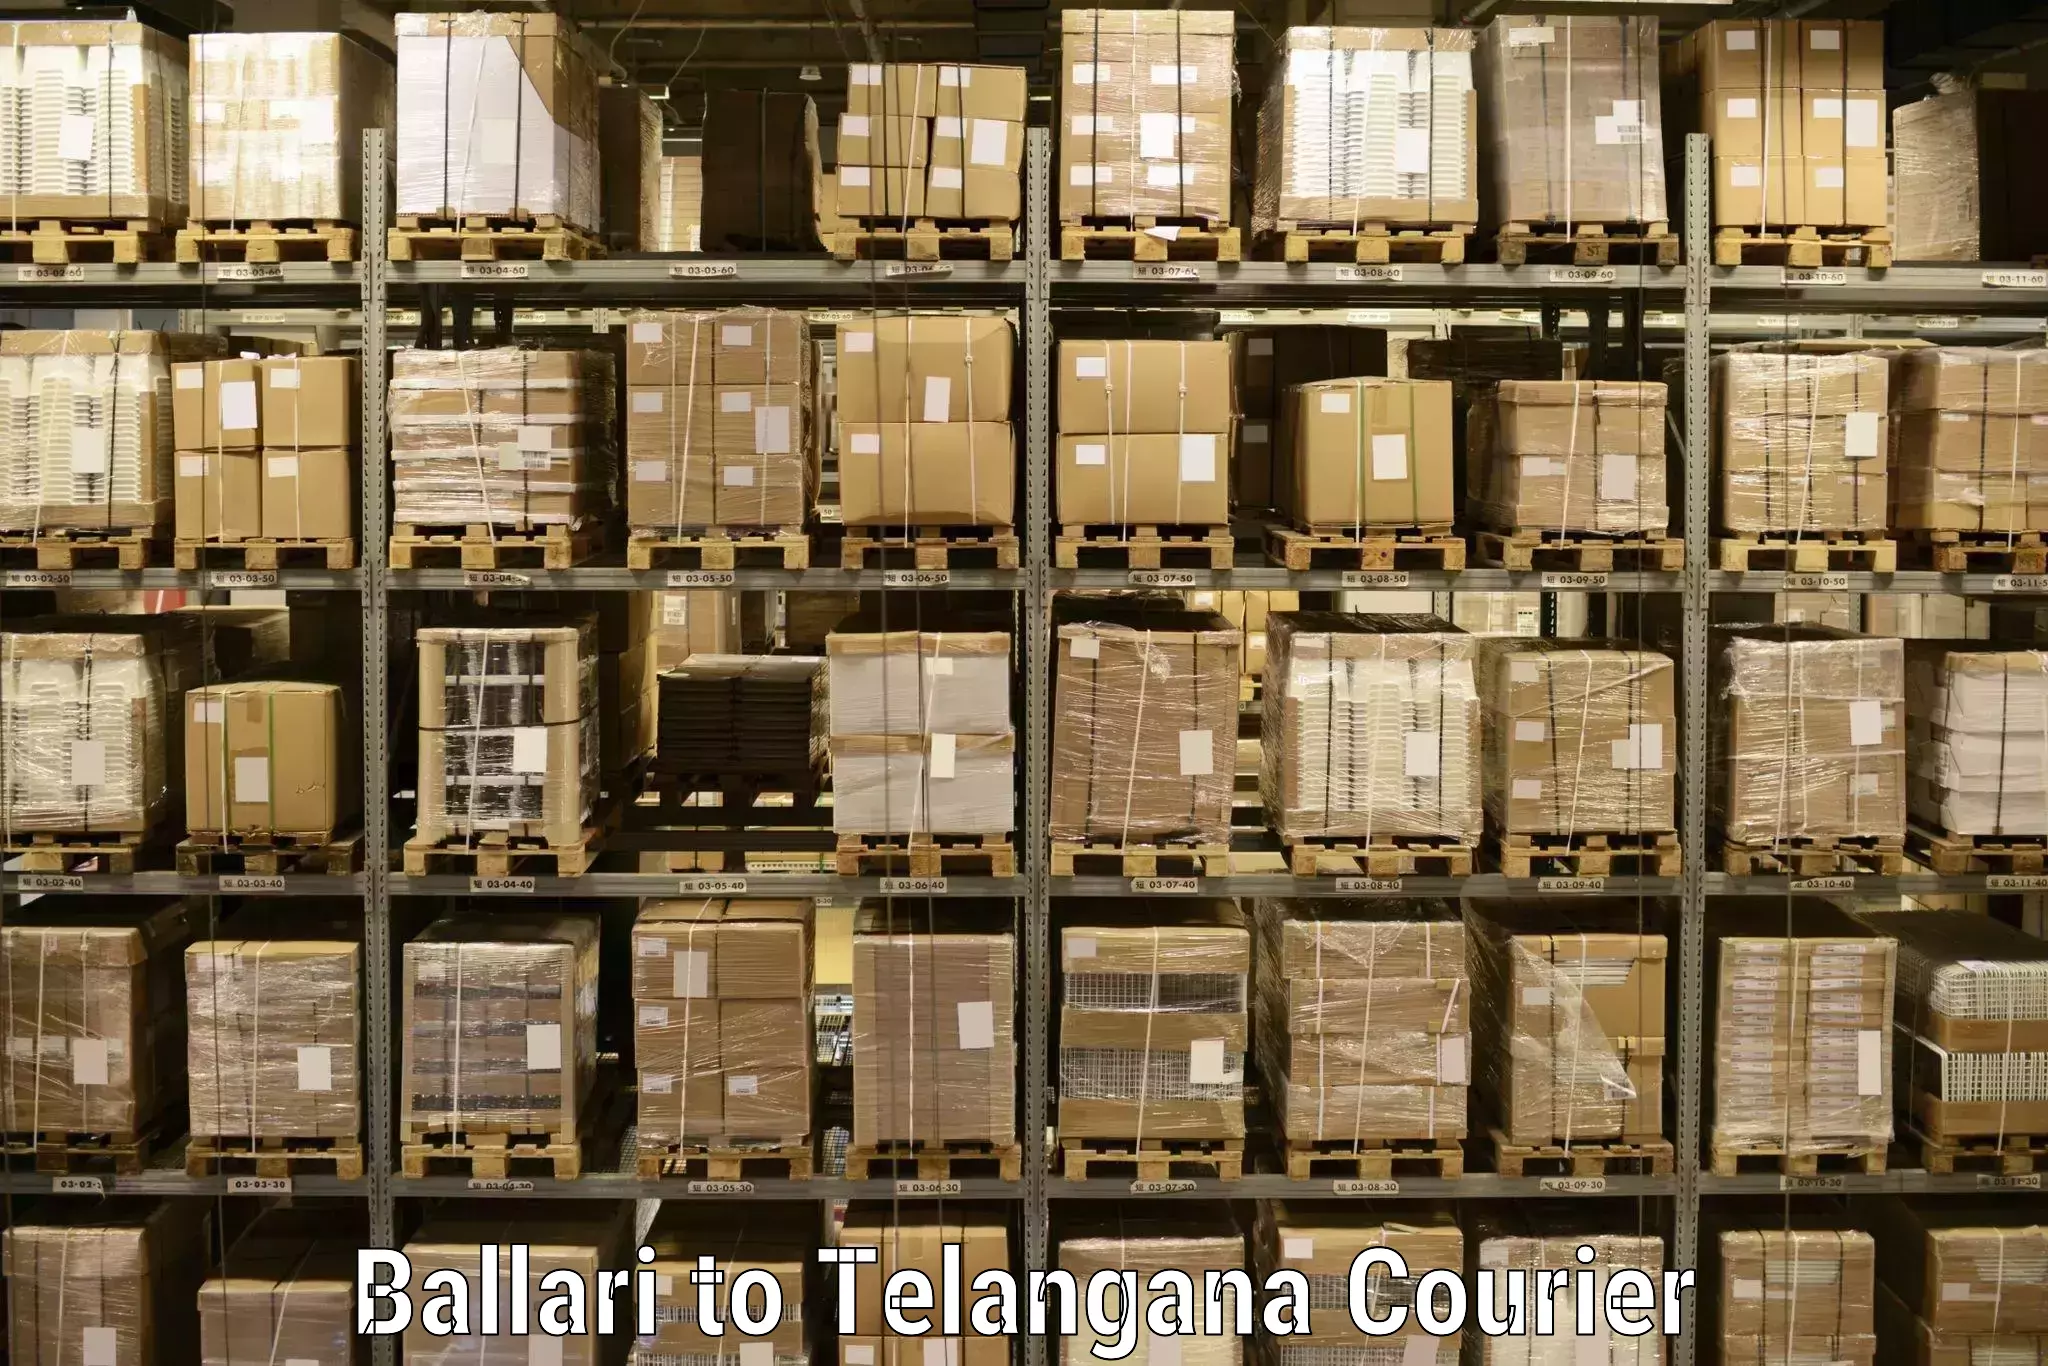 High-quality delivery services in Ballari to Hanamkonda